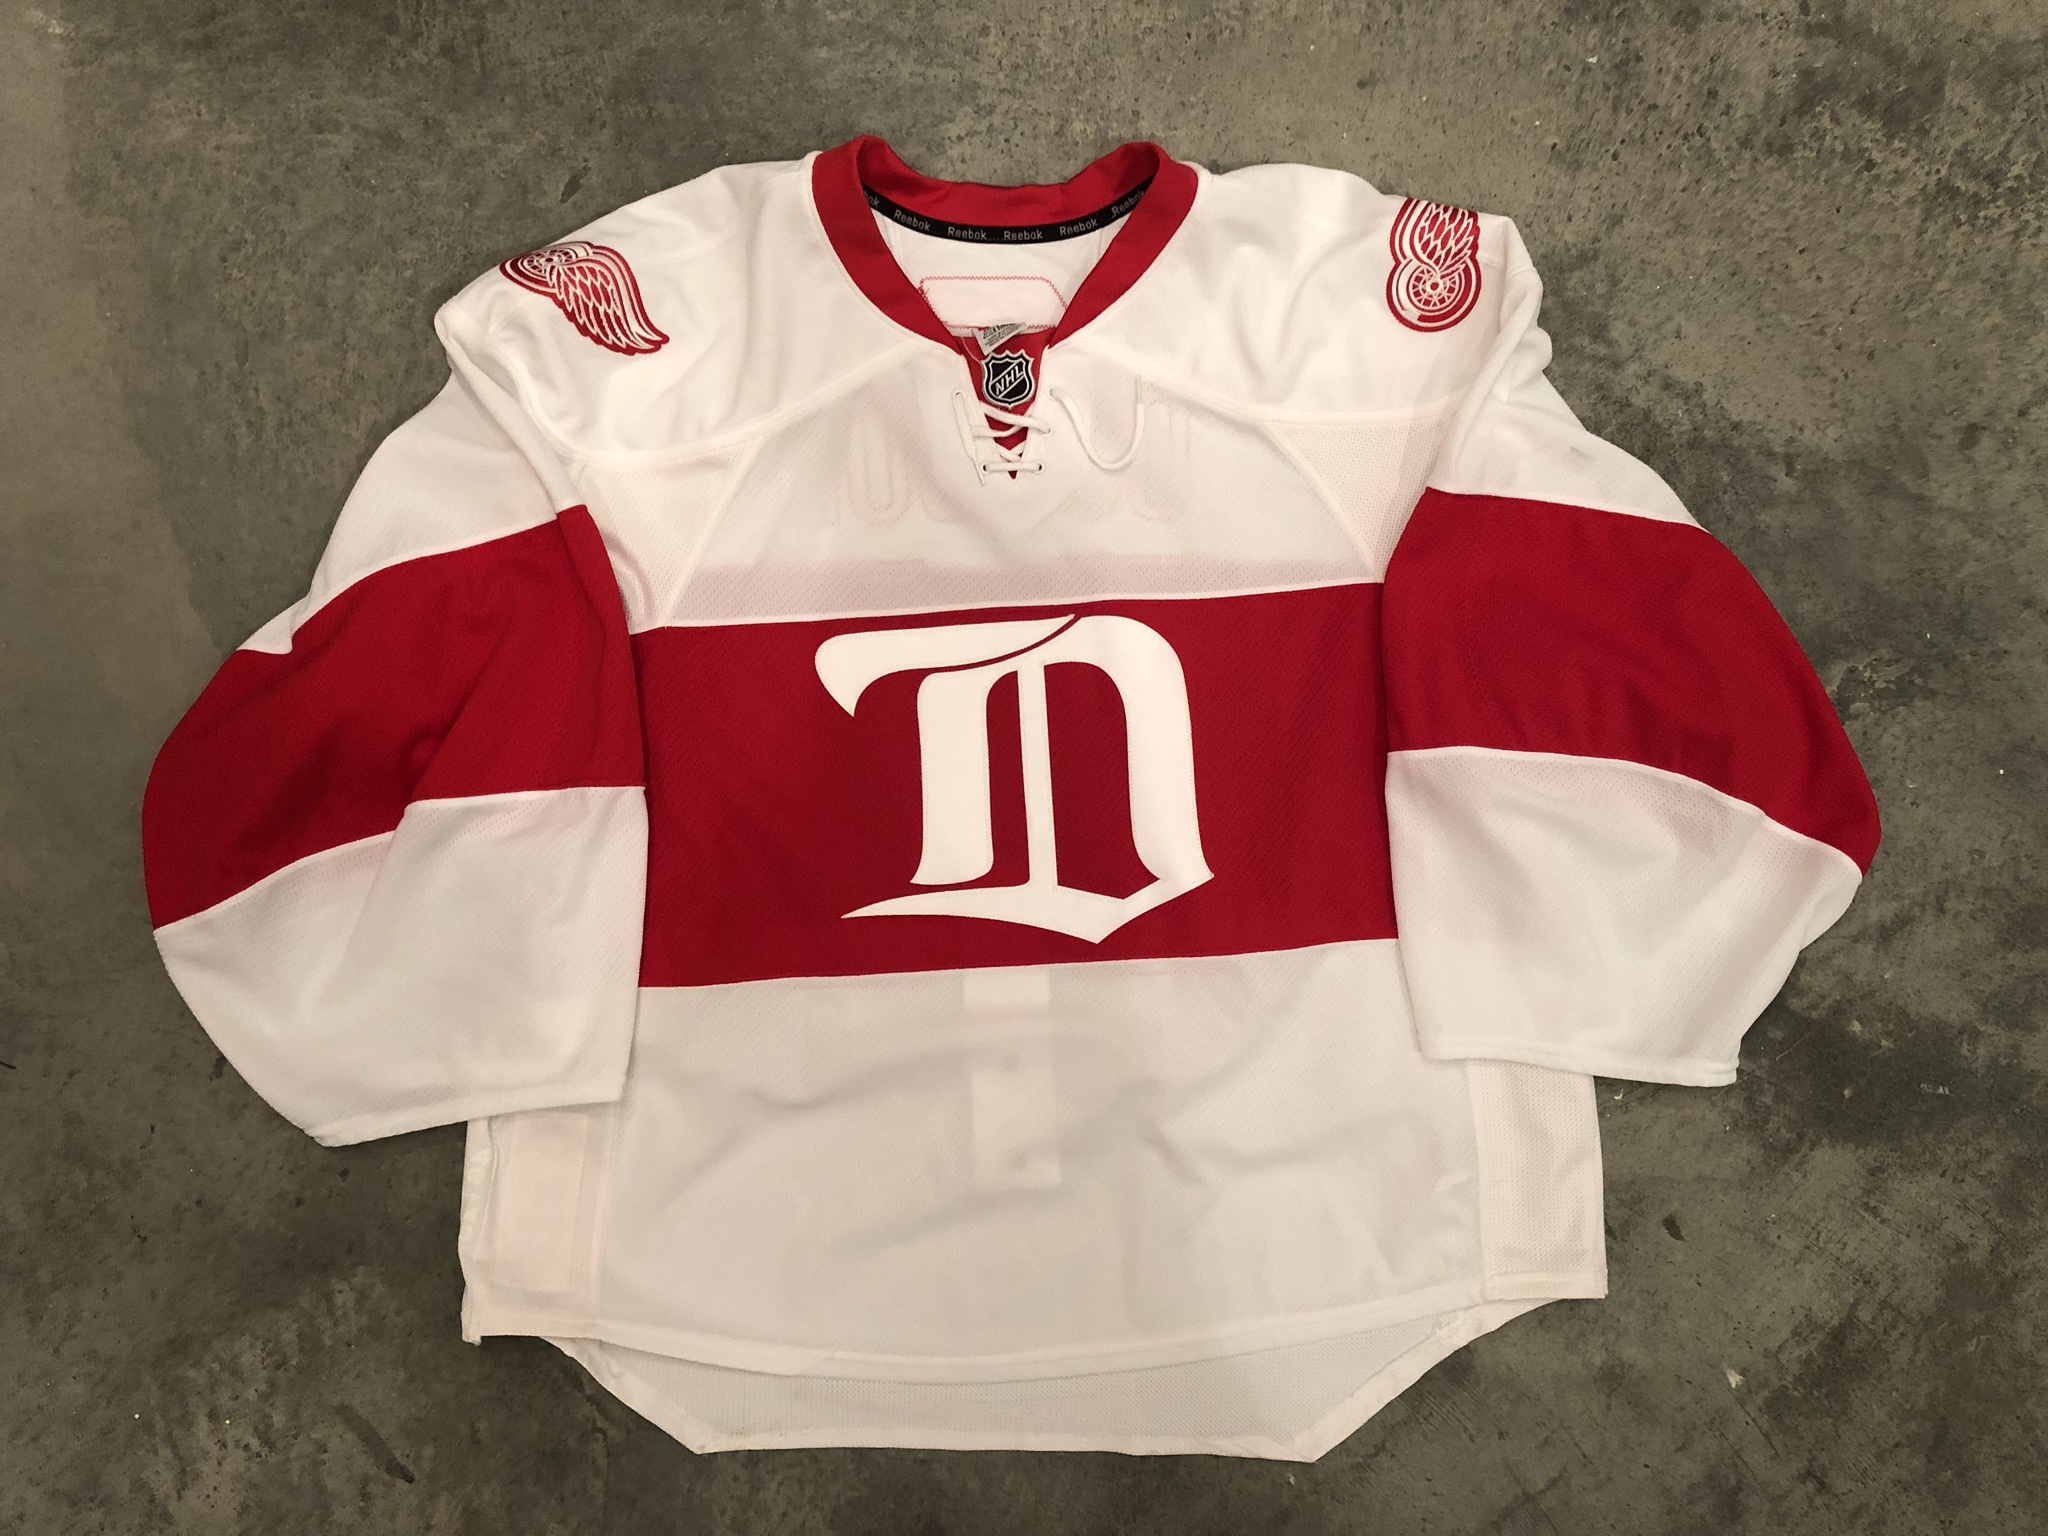 Detroit Red Wings NHL Starter Chris Osgood Vintage Jersey